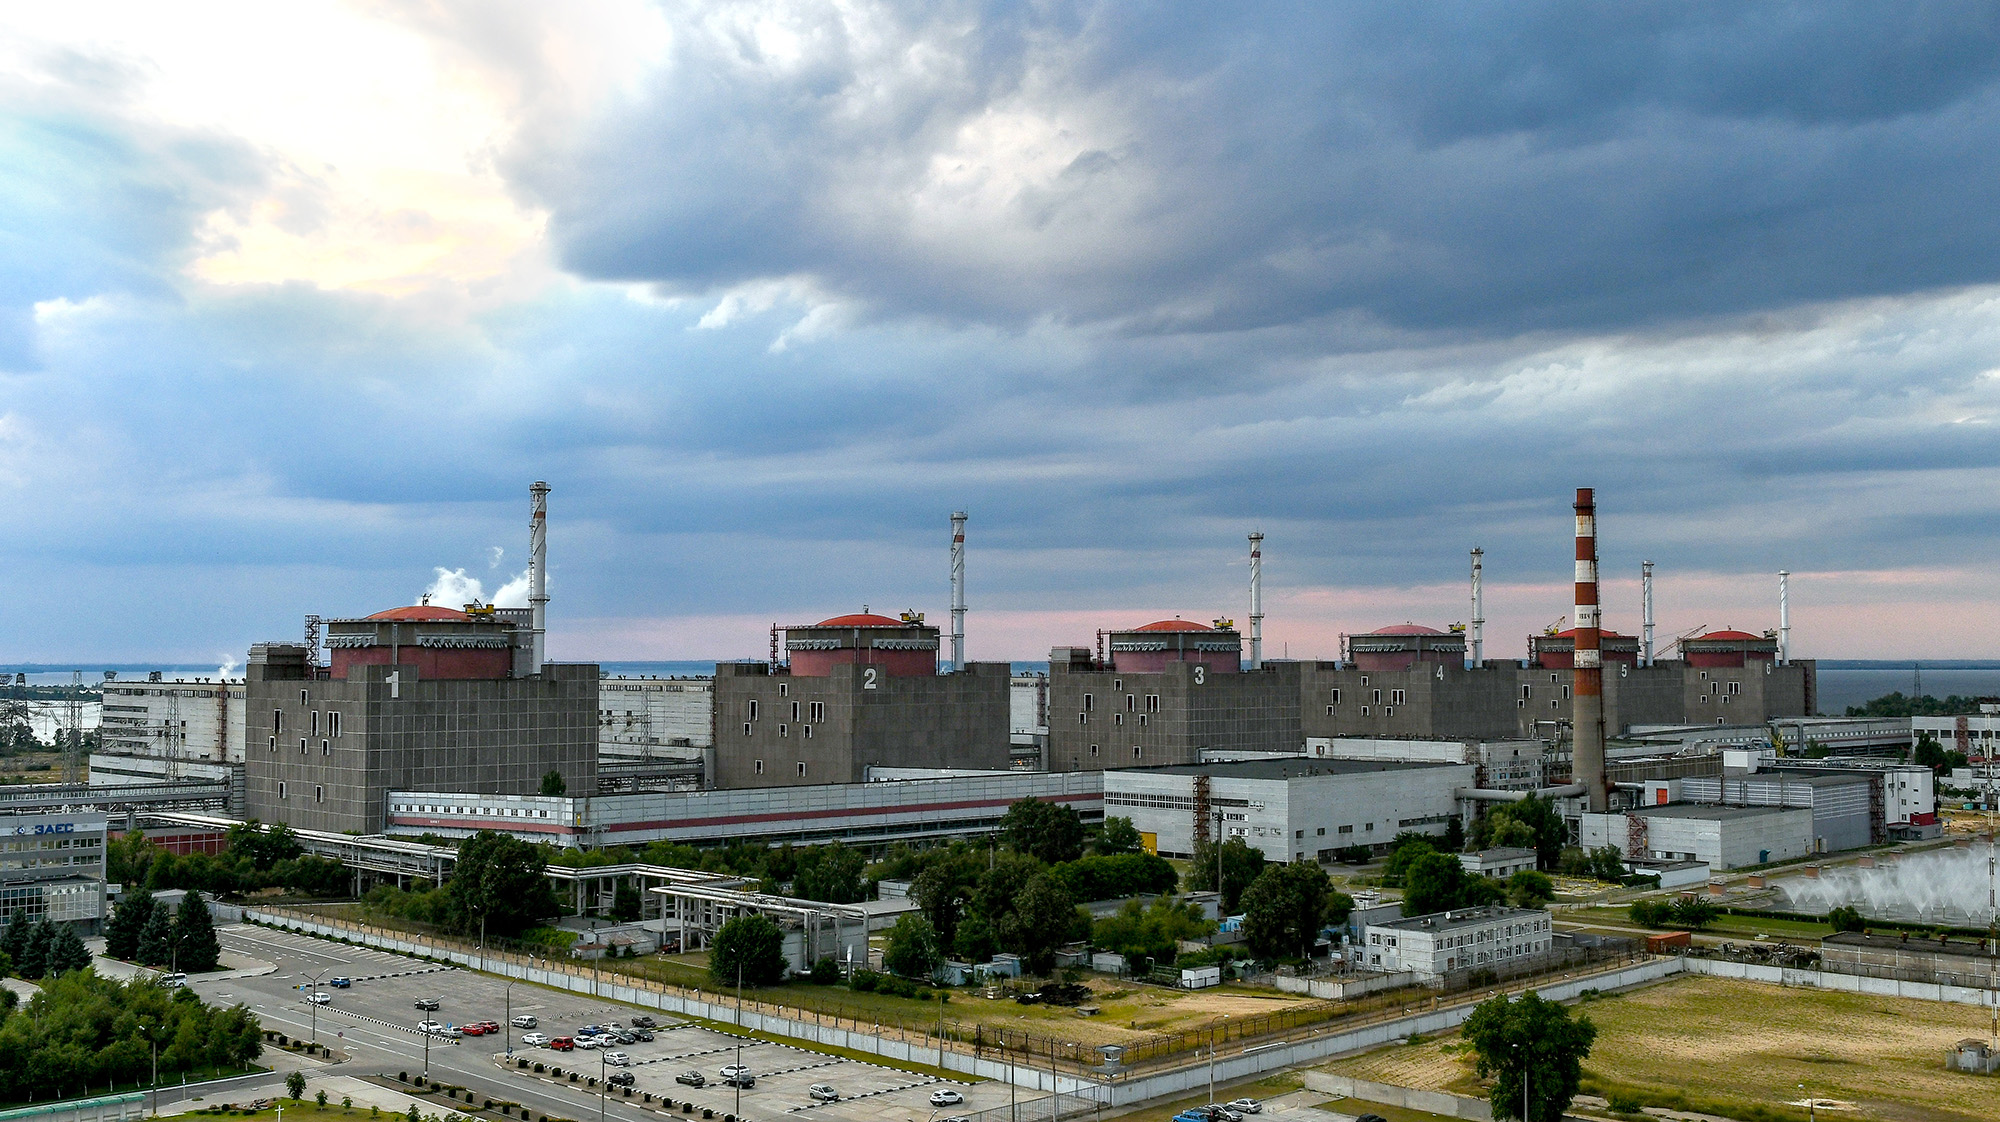 The Zaporizhia Nuclear Power Plant is seen in Enerhodar, Ukraine on July 9, 2019.